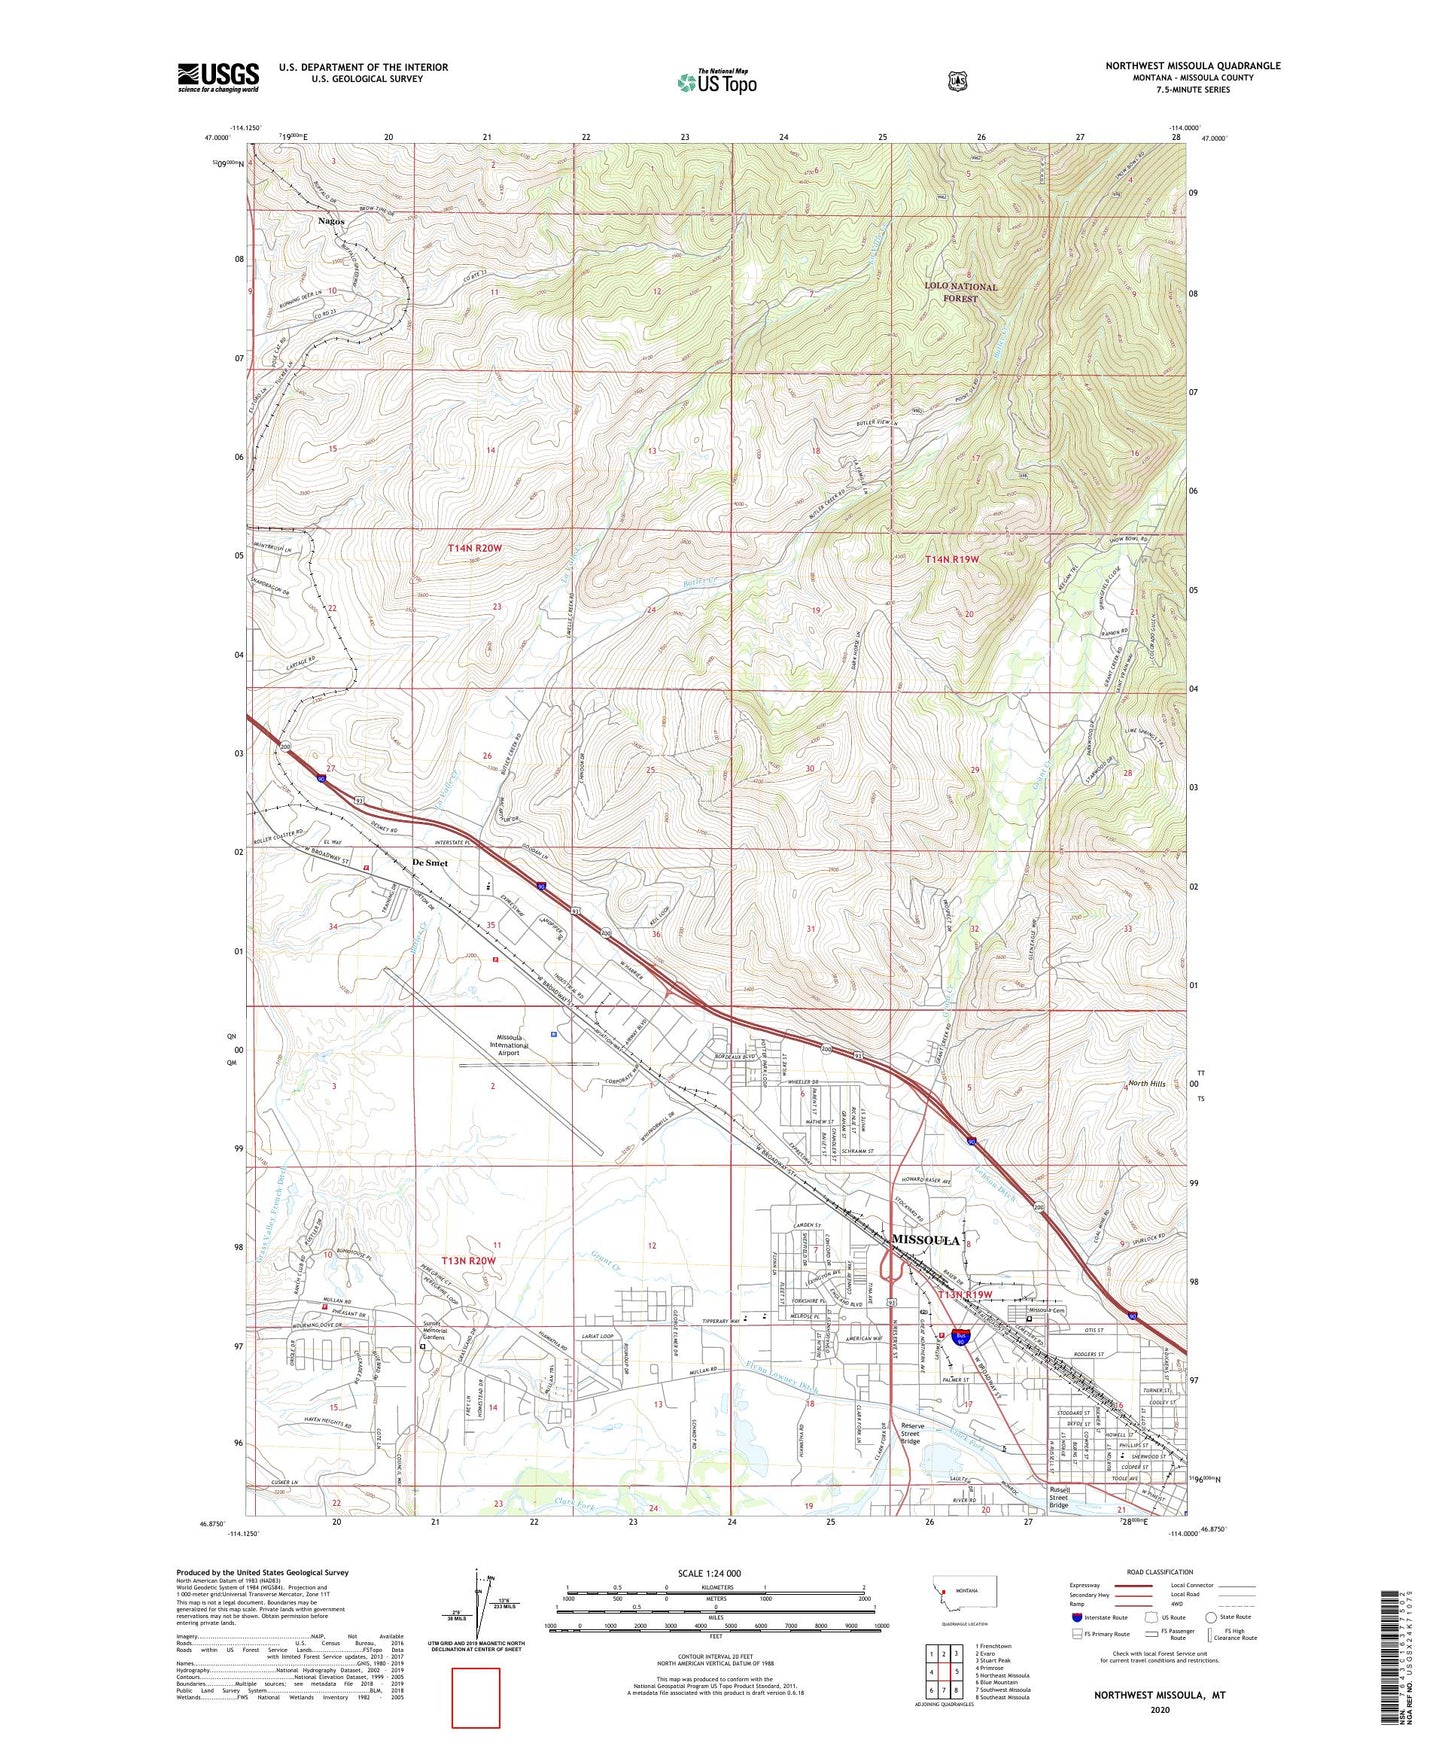 Northwest Missoula Montana US Topo Map Image